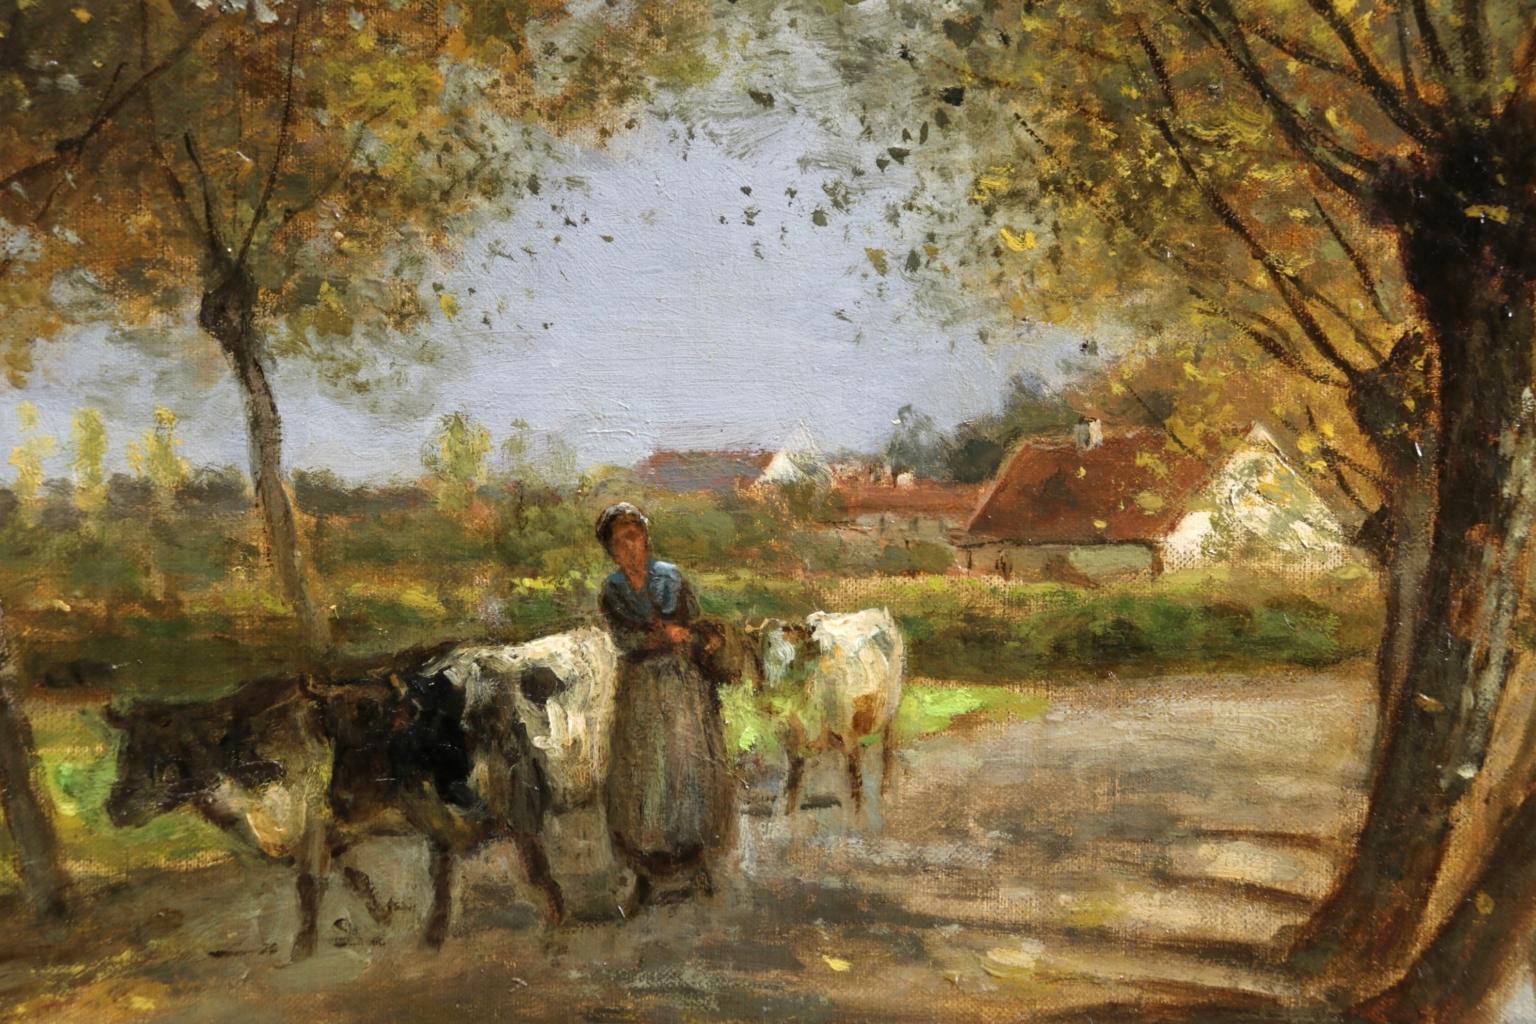 Herder & Cattle - Barbizon Oil, Figures & Cows in Landscape by Cesar De Cock - Barbizon School Painting by César De Cock